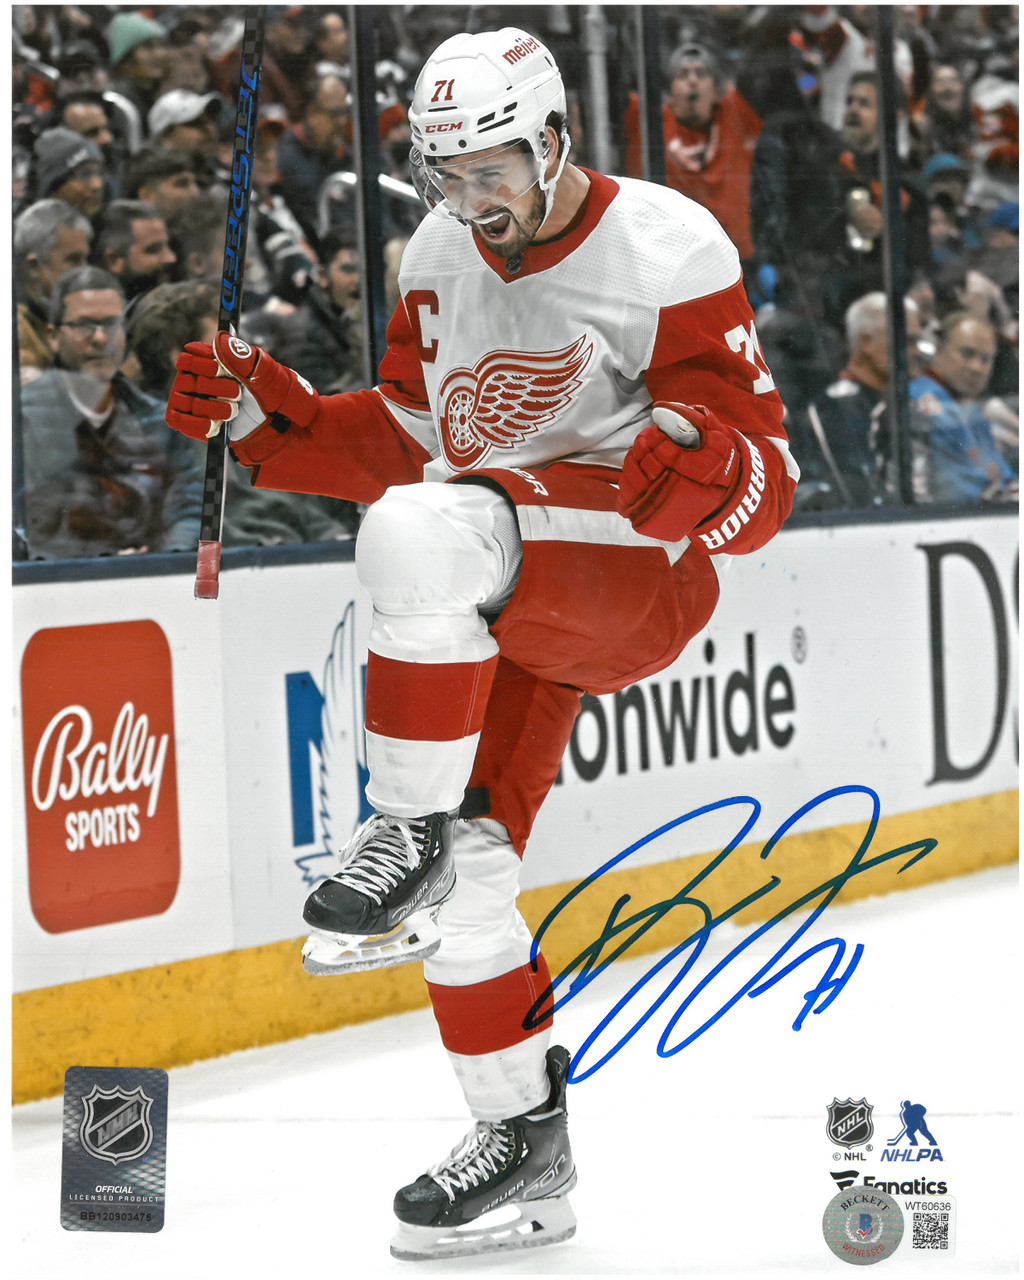 Dylan Larkin Autographed Detroit Red Wings Reebok Premier Jersey